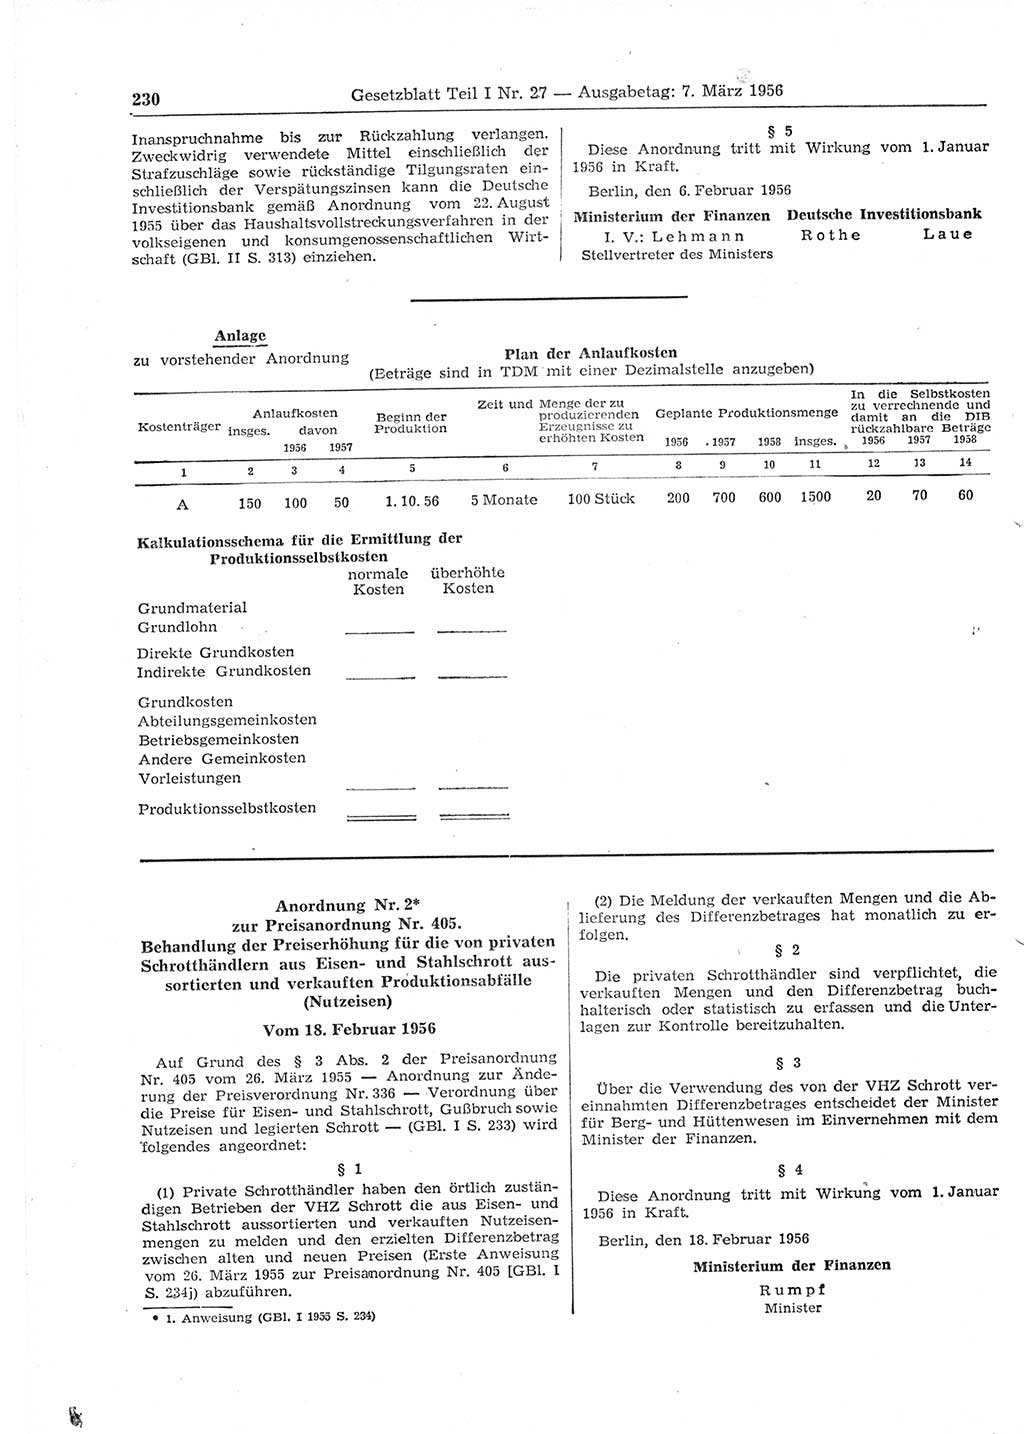 Gesetzblatt (GBl.) der Deutschen Demokratischen Republik (DDR) Teil Ⅰ 1956, Seite 230 (GBl. DDR Ⅰ 1956, S. 230)